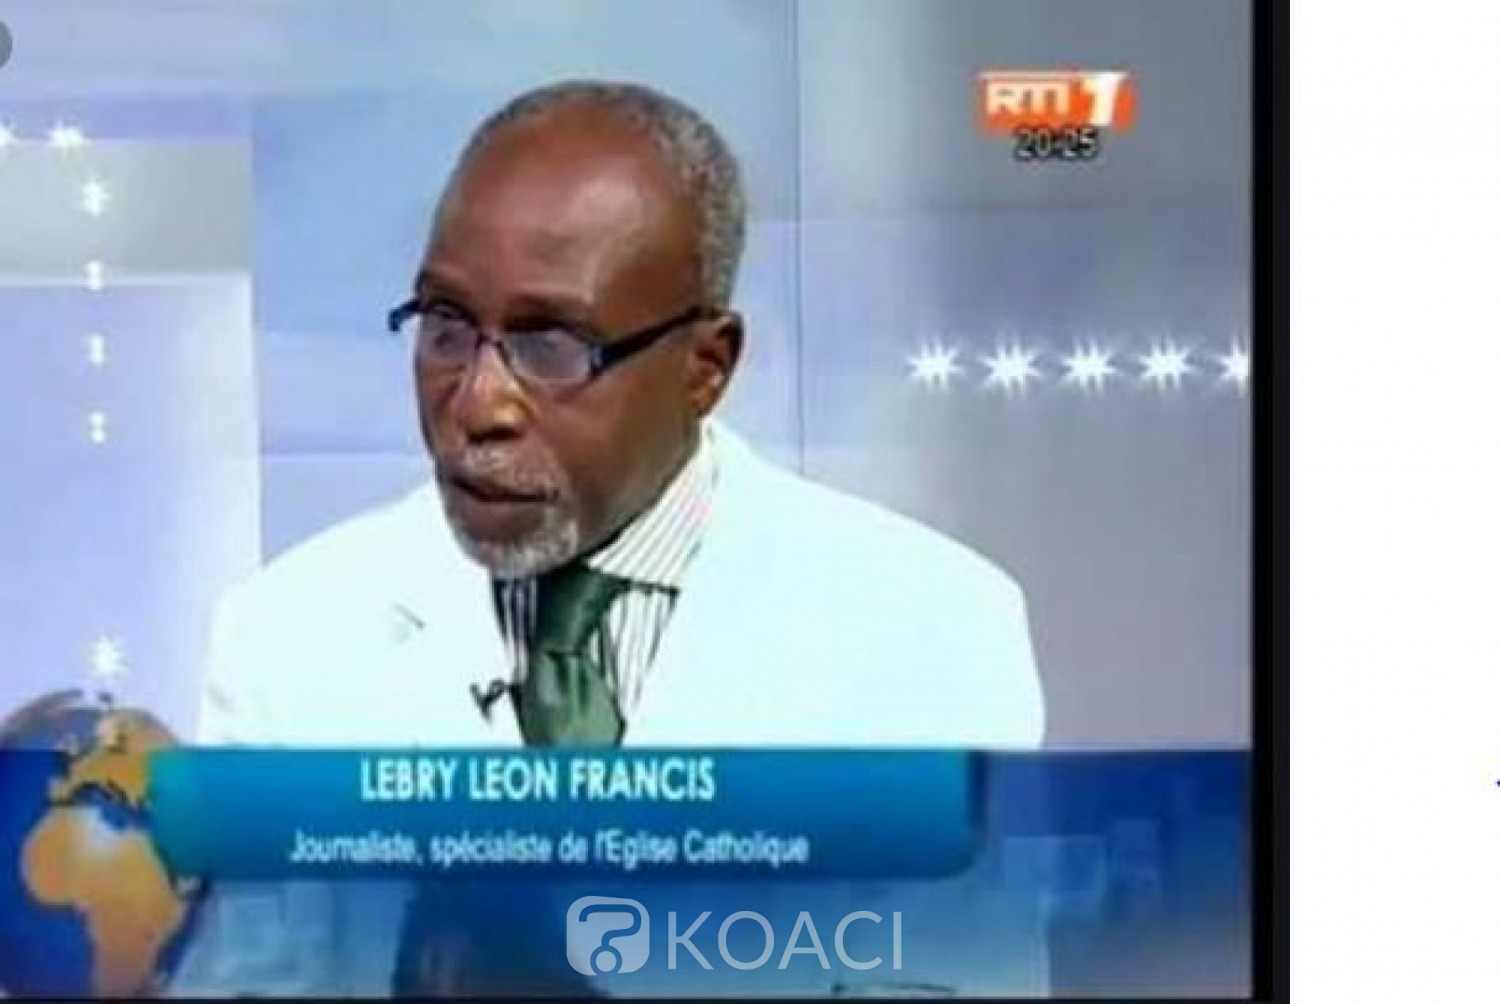 Côte d'Ivoire: Décès à Paris de l'Ex DG de Frat Mat, Lebry Léon Francis (Proches)